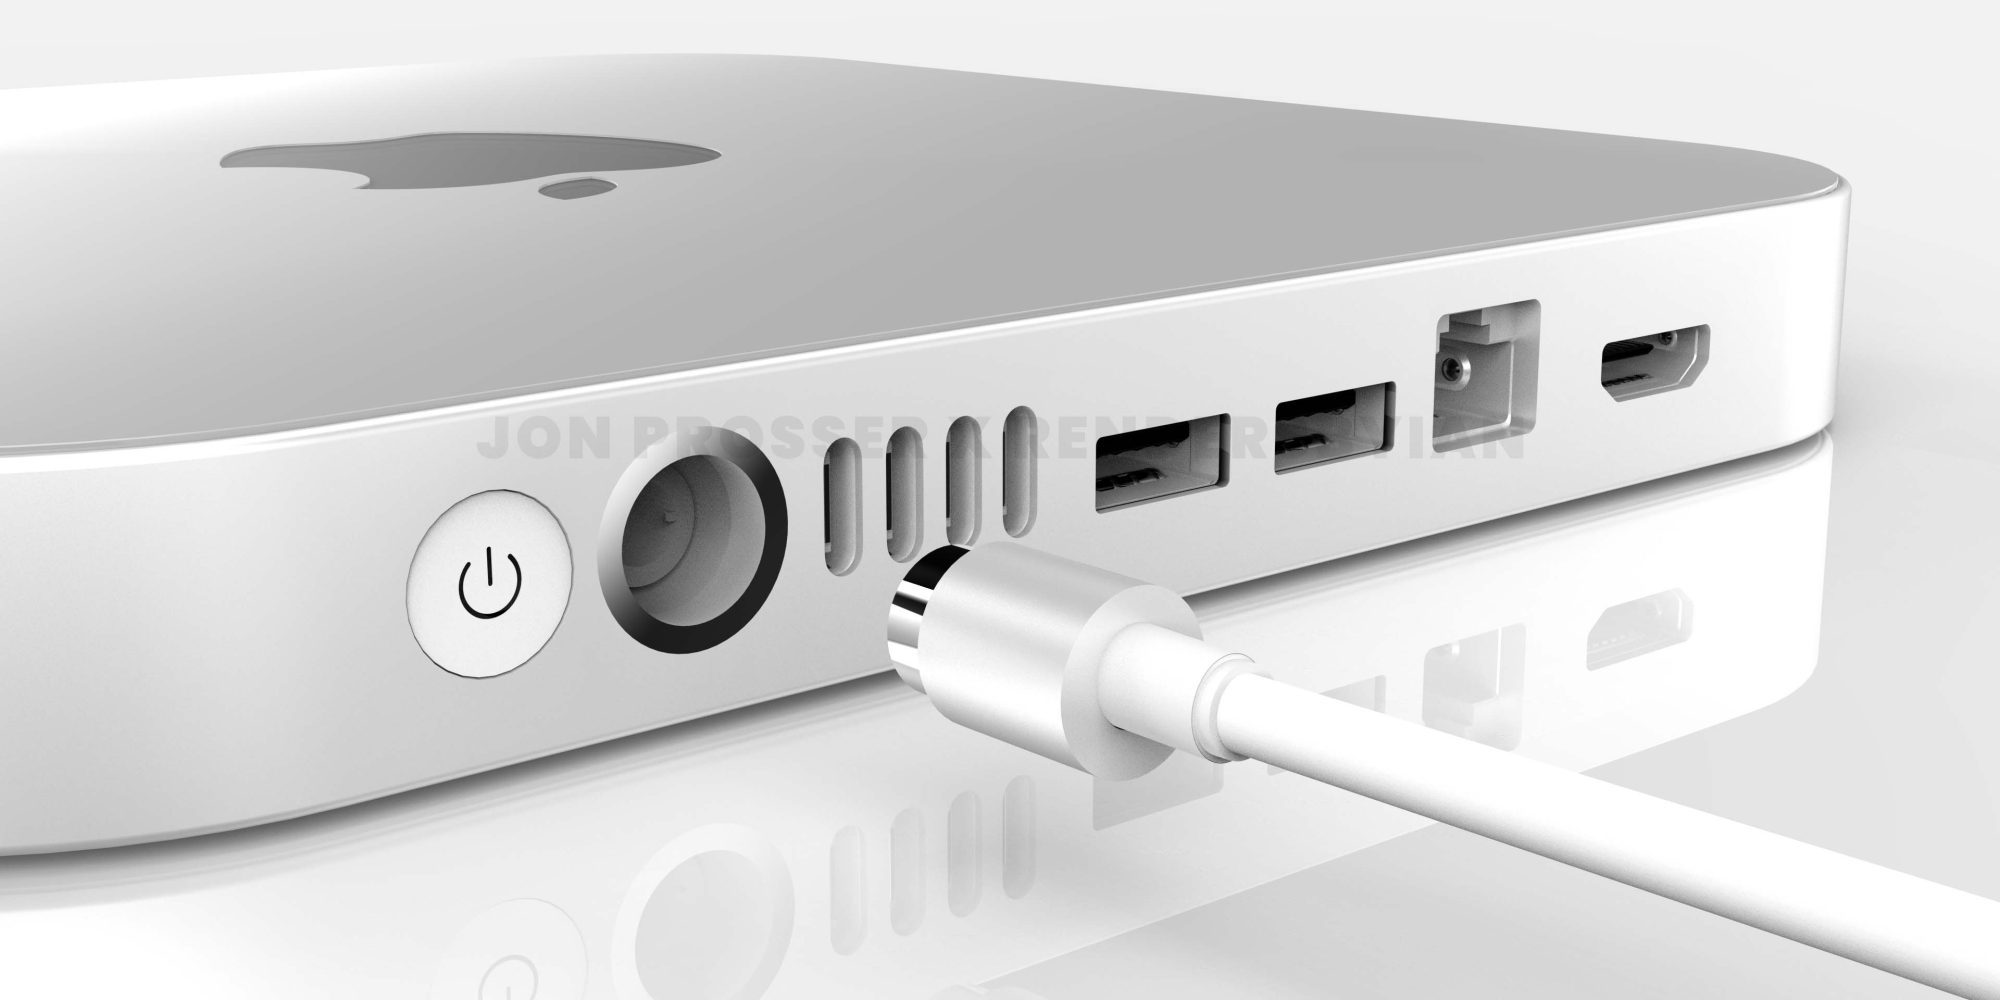 Производительный Mac mini на M1 нового поколения получит обновлённый дизайн и тонкий корпус